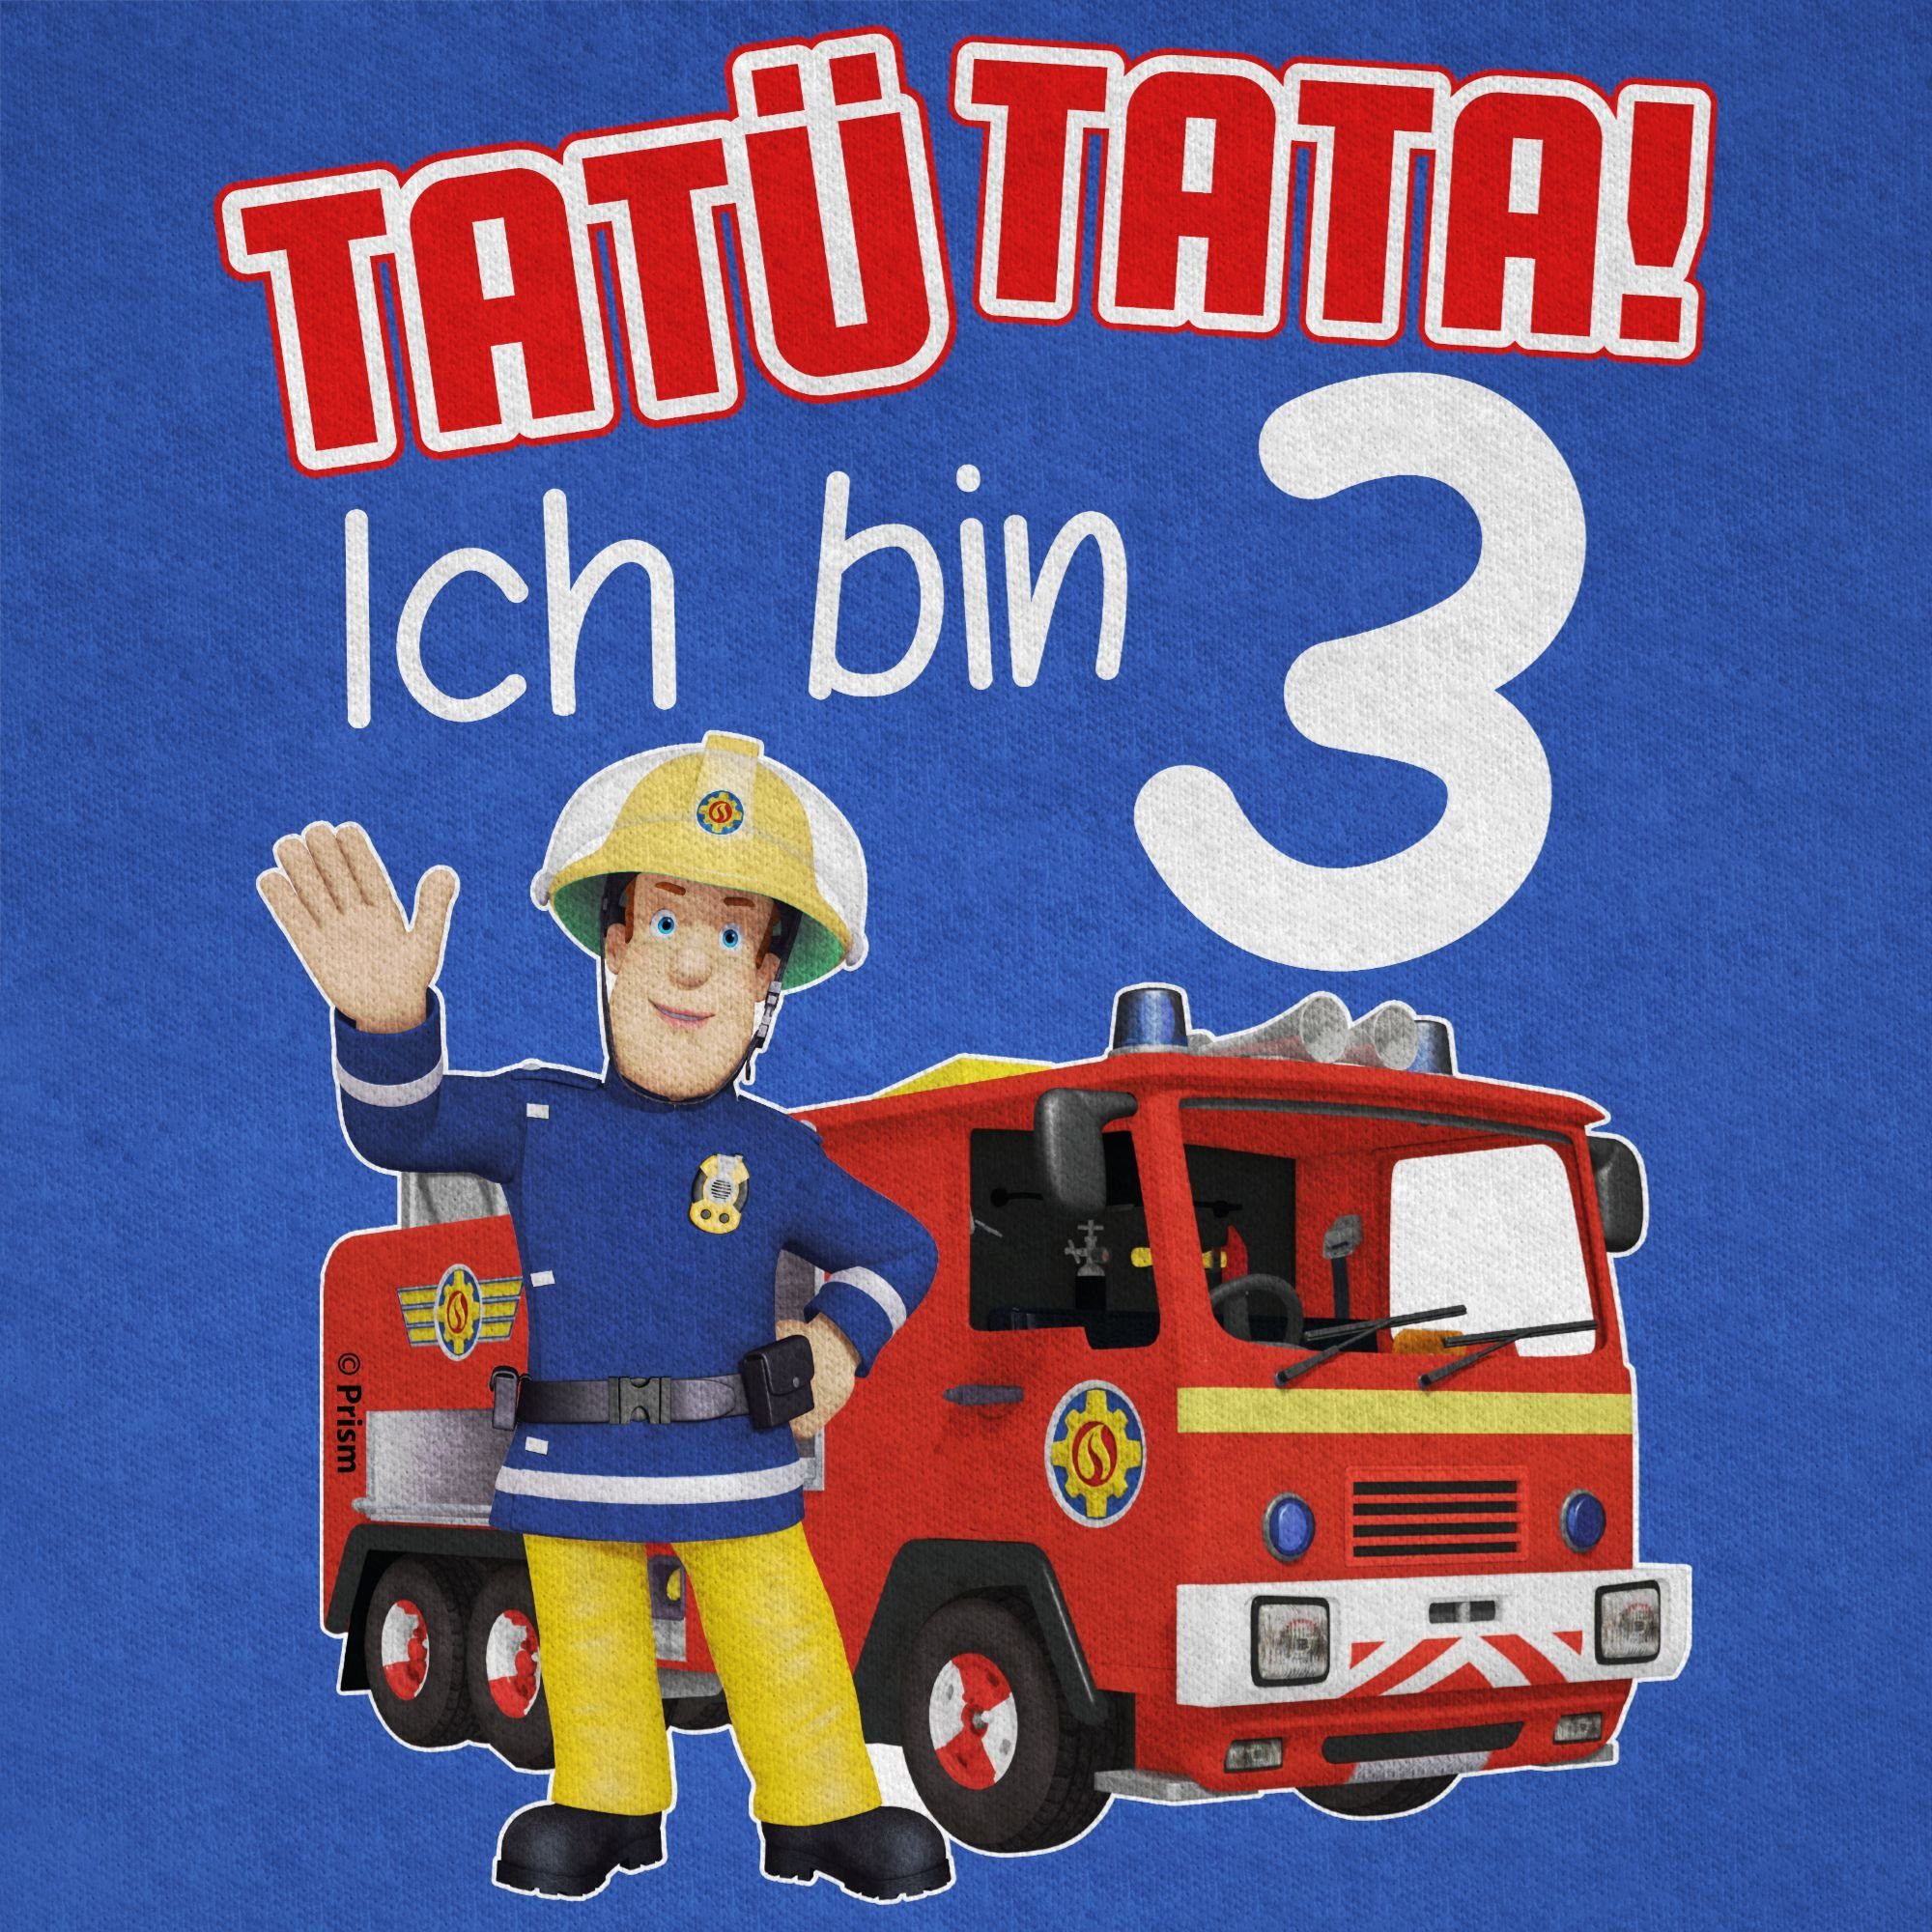 Royalblau Shirtracer Sam Jungen Tatü Tata! 01 Ich Geburtstag T-Shirt bin Feuerwehrmann 3